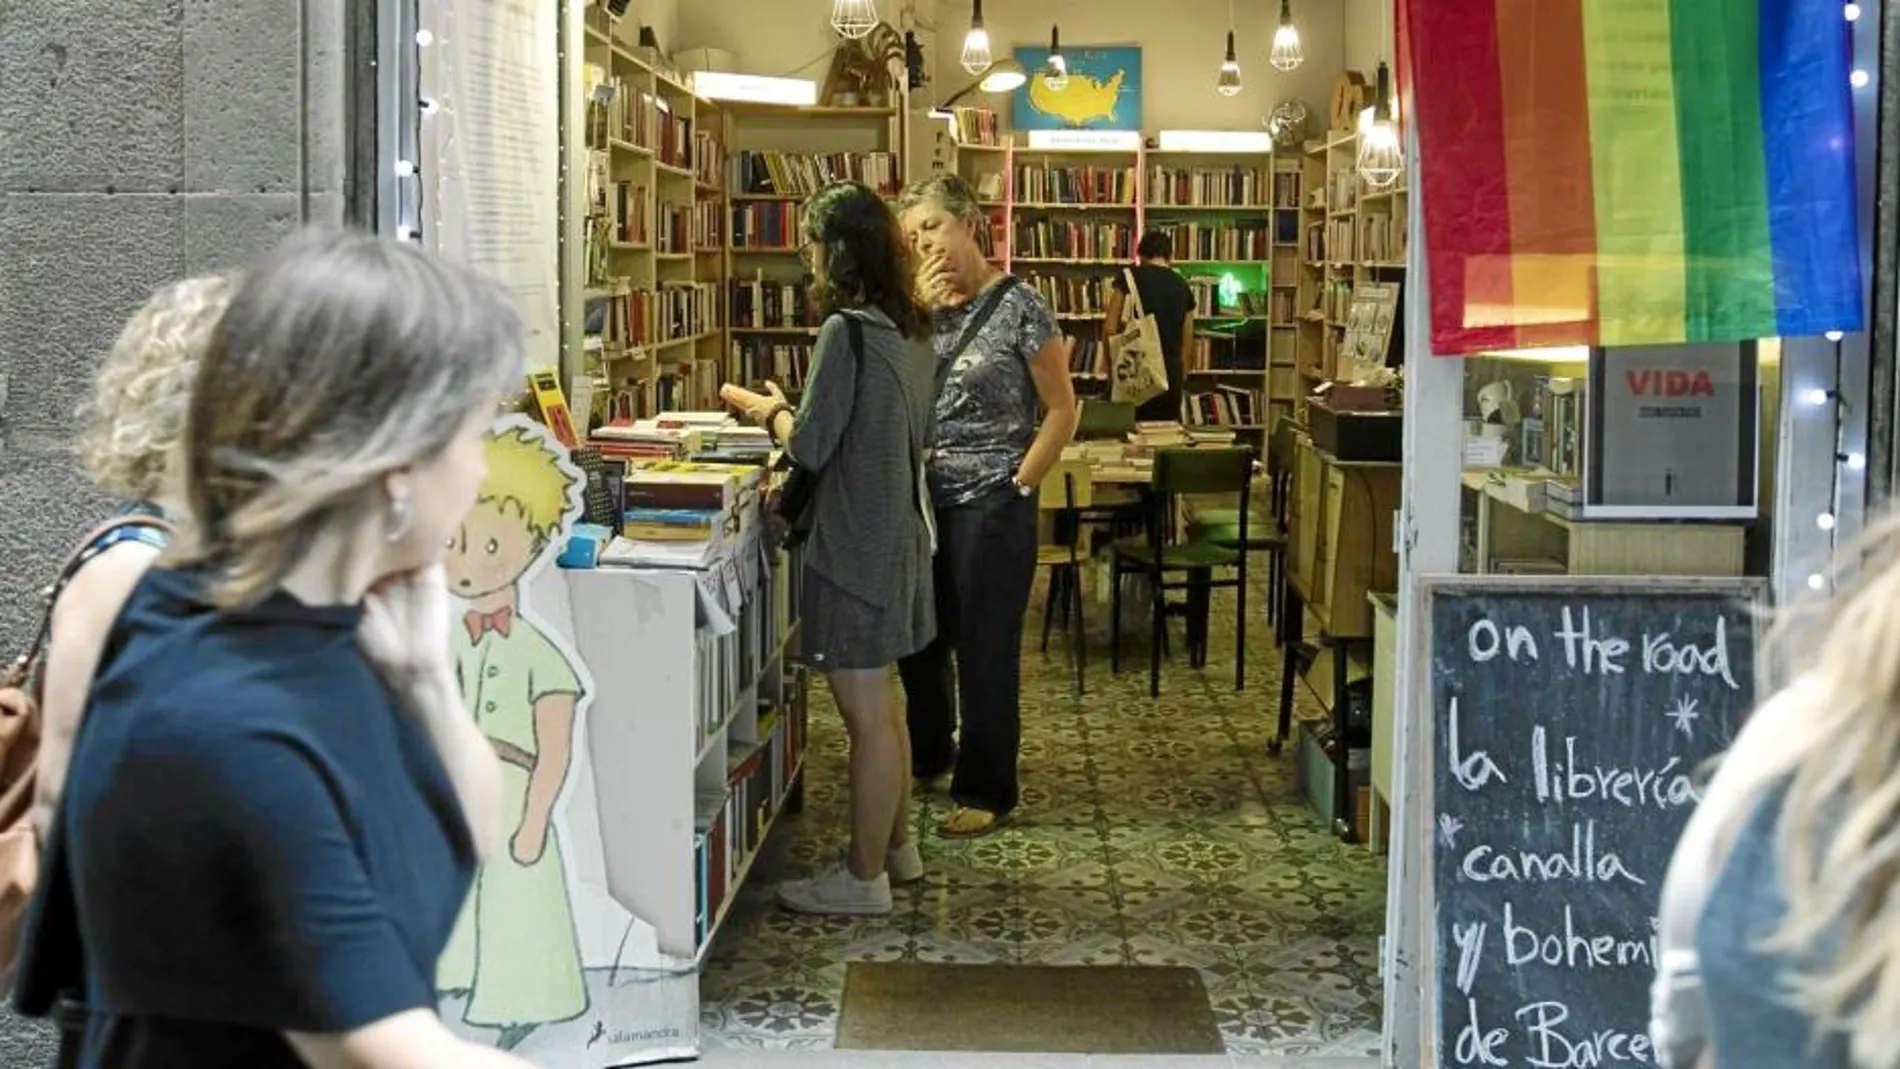 El exterior de la librería invita a entrar con un público que se centra en el amante de los libros local. Foto: Miquel González/Shooting